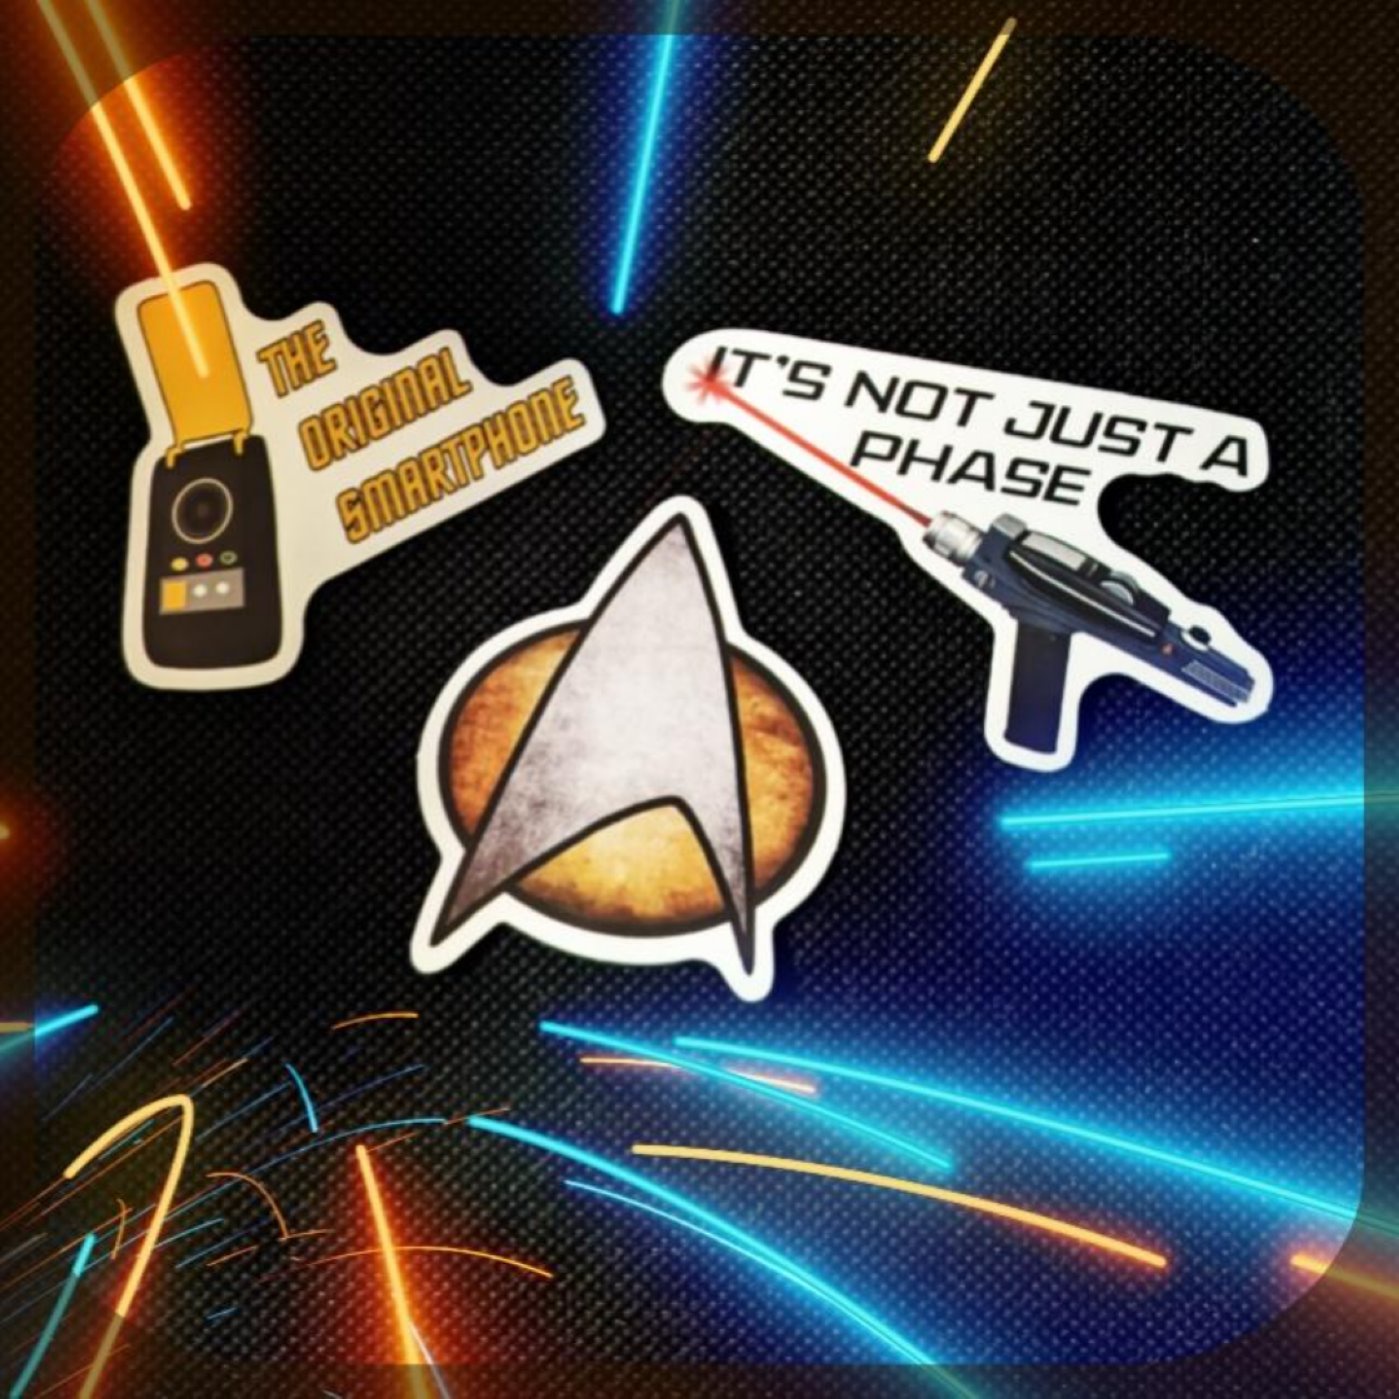 TrekTech - Der Star Trek Technik Podcast